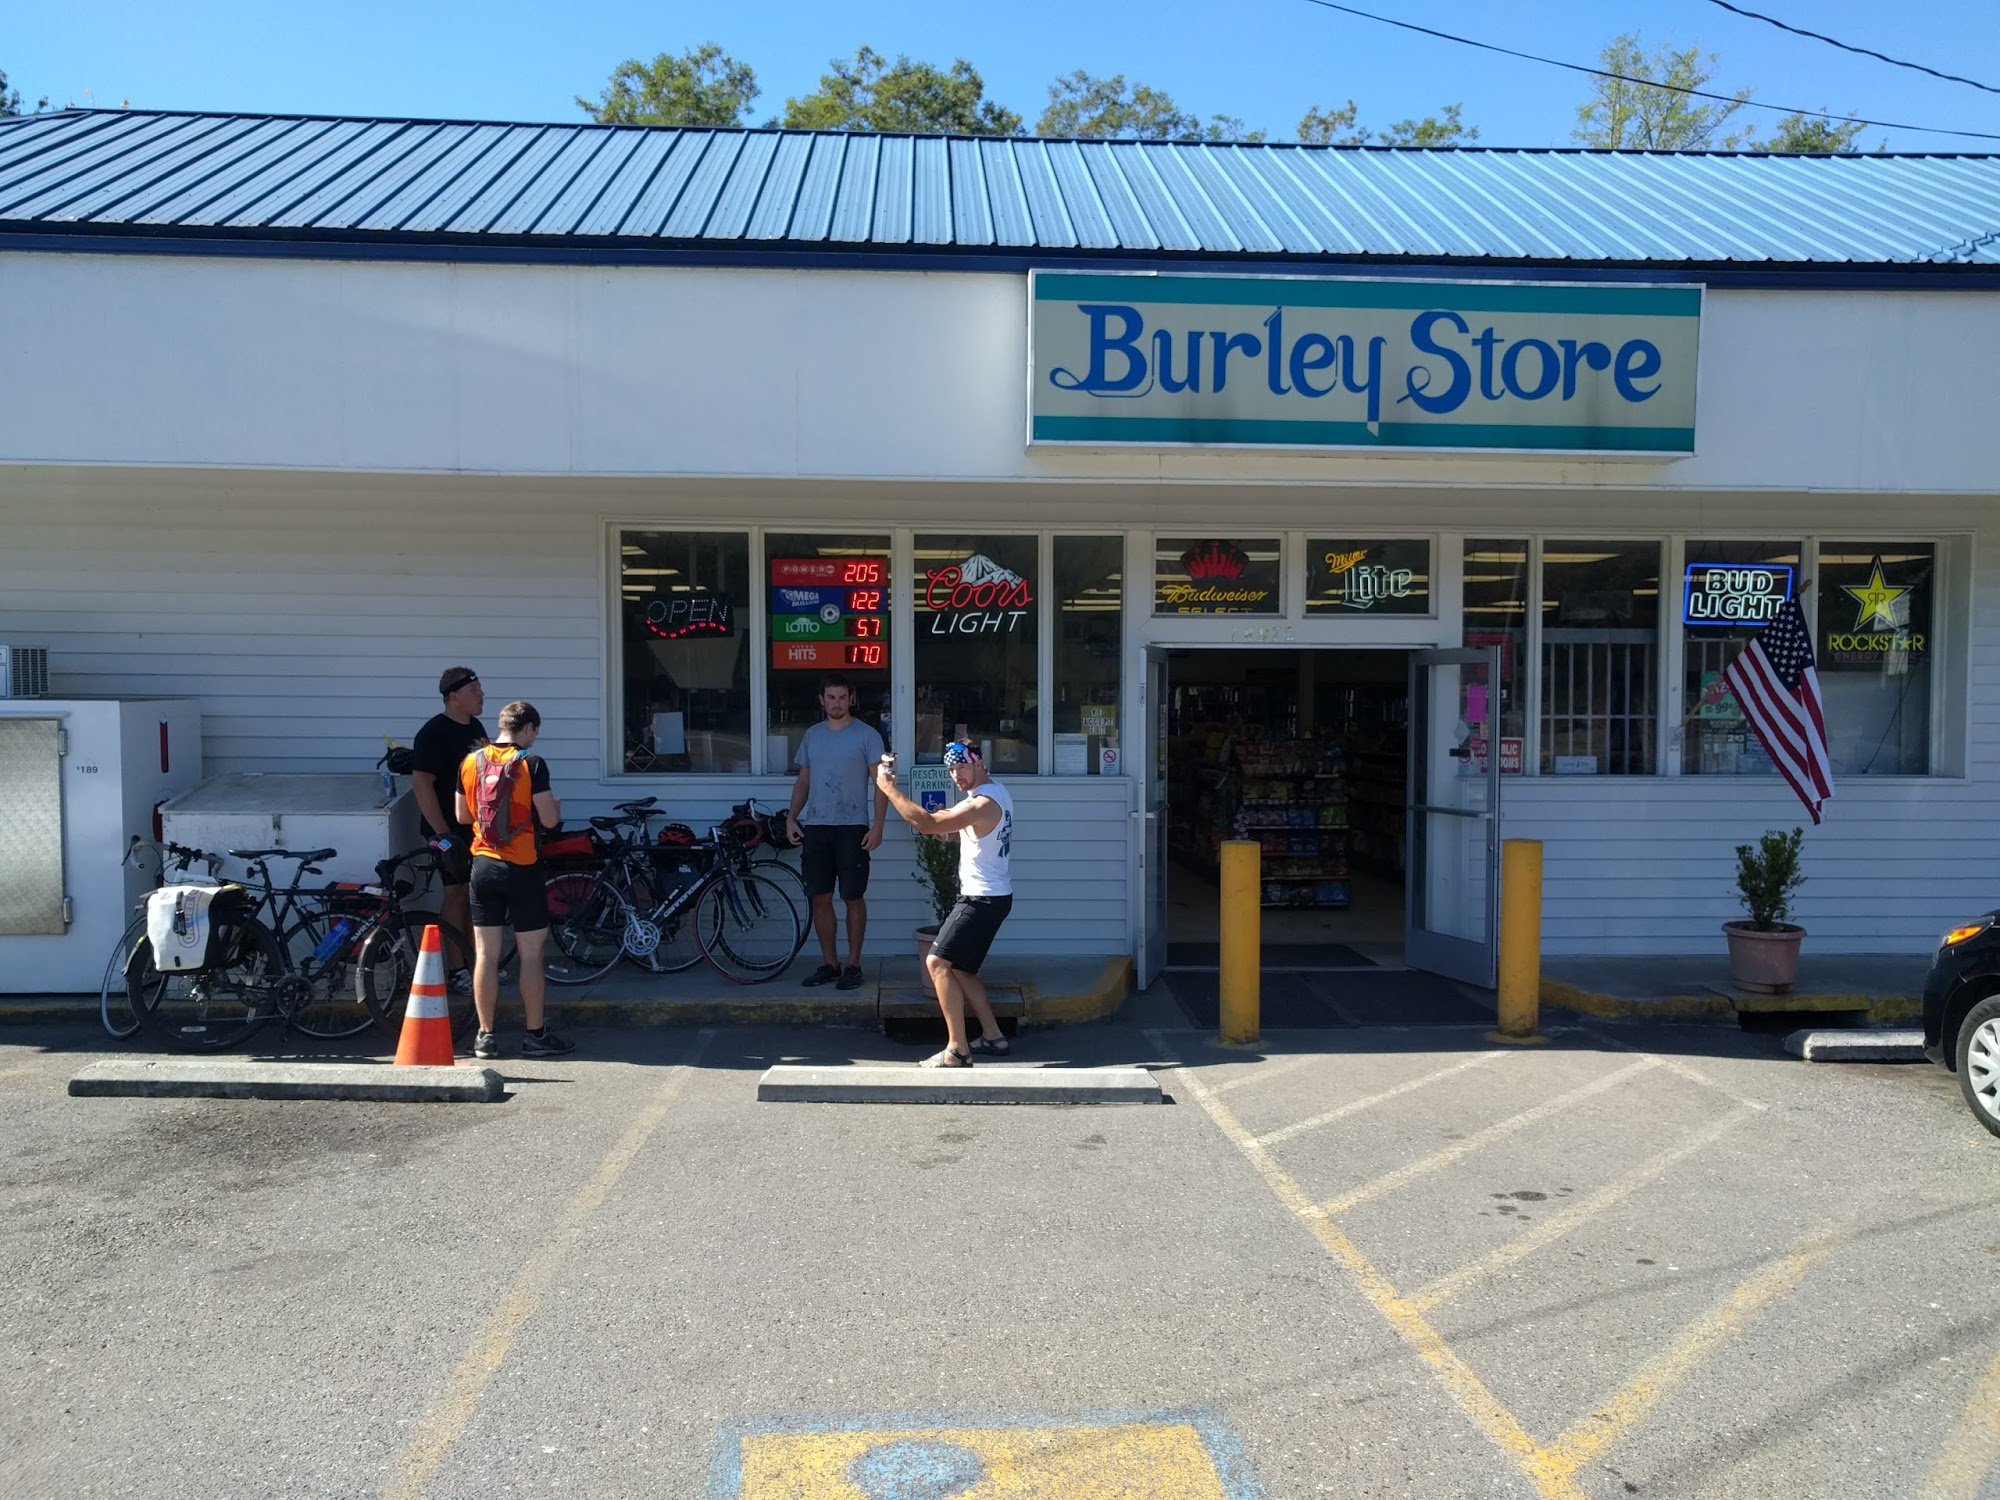 Burley Store